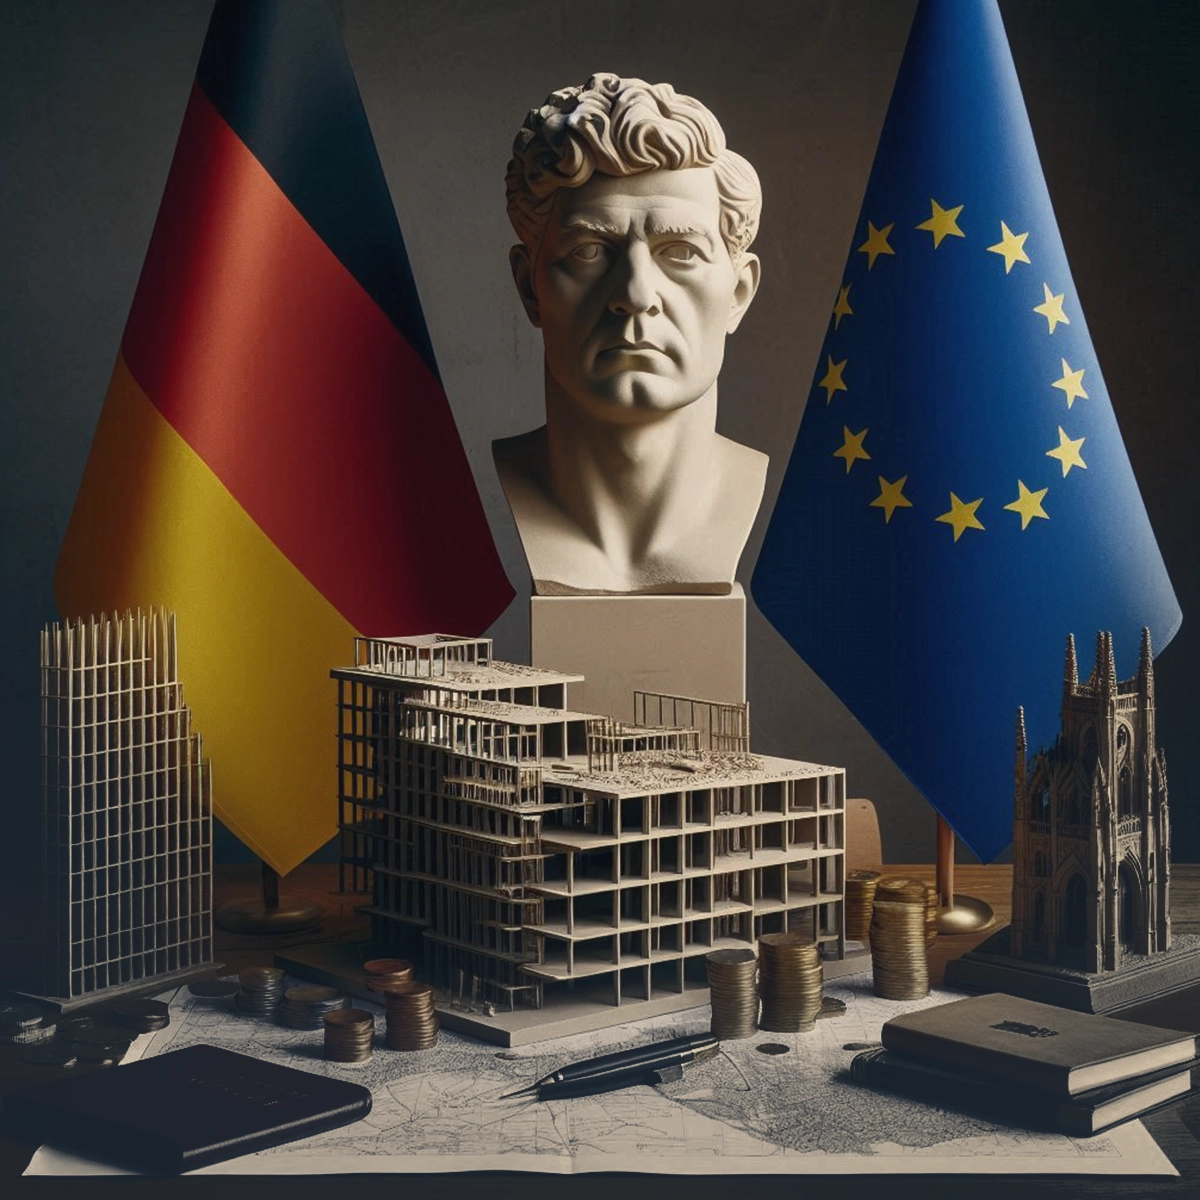 آلمان غول اقتصاد اروپا